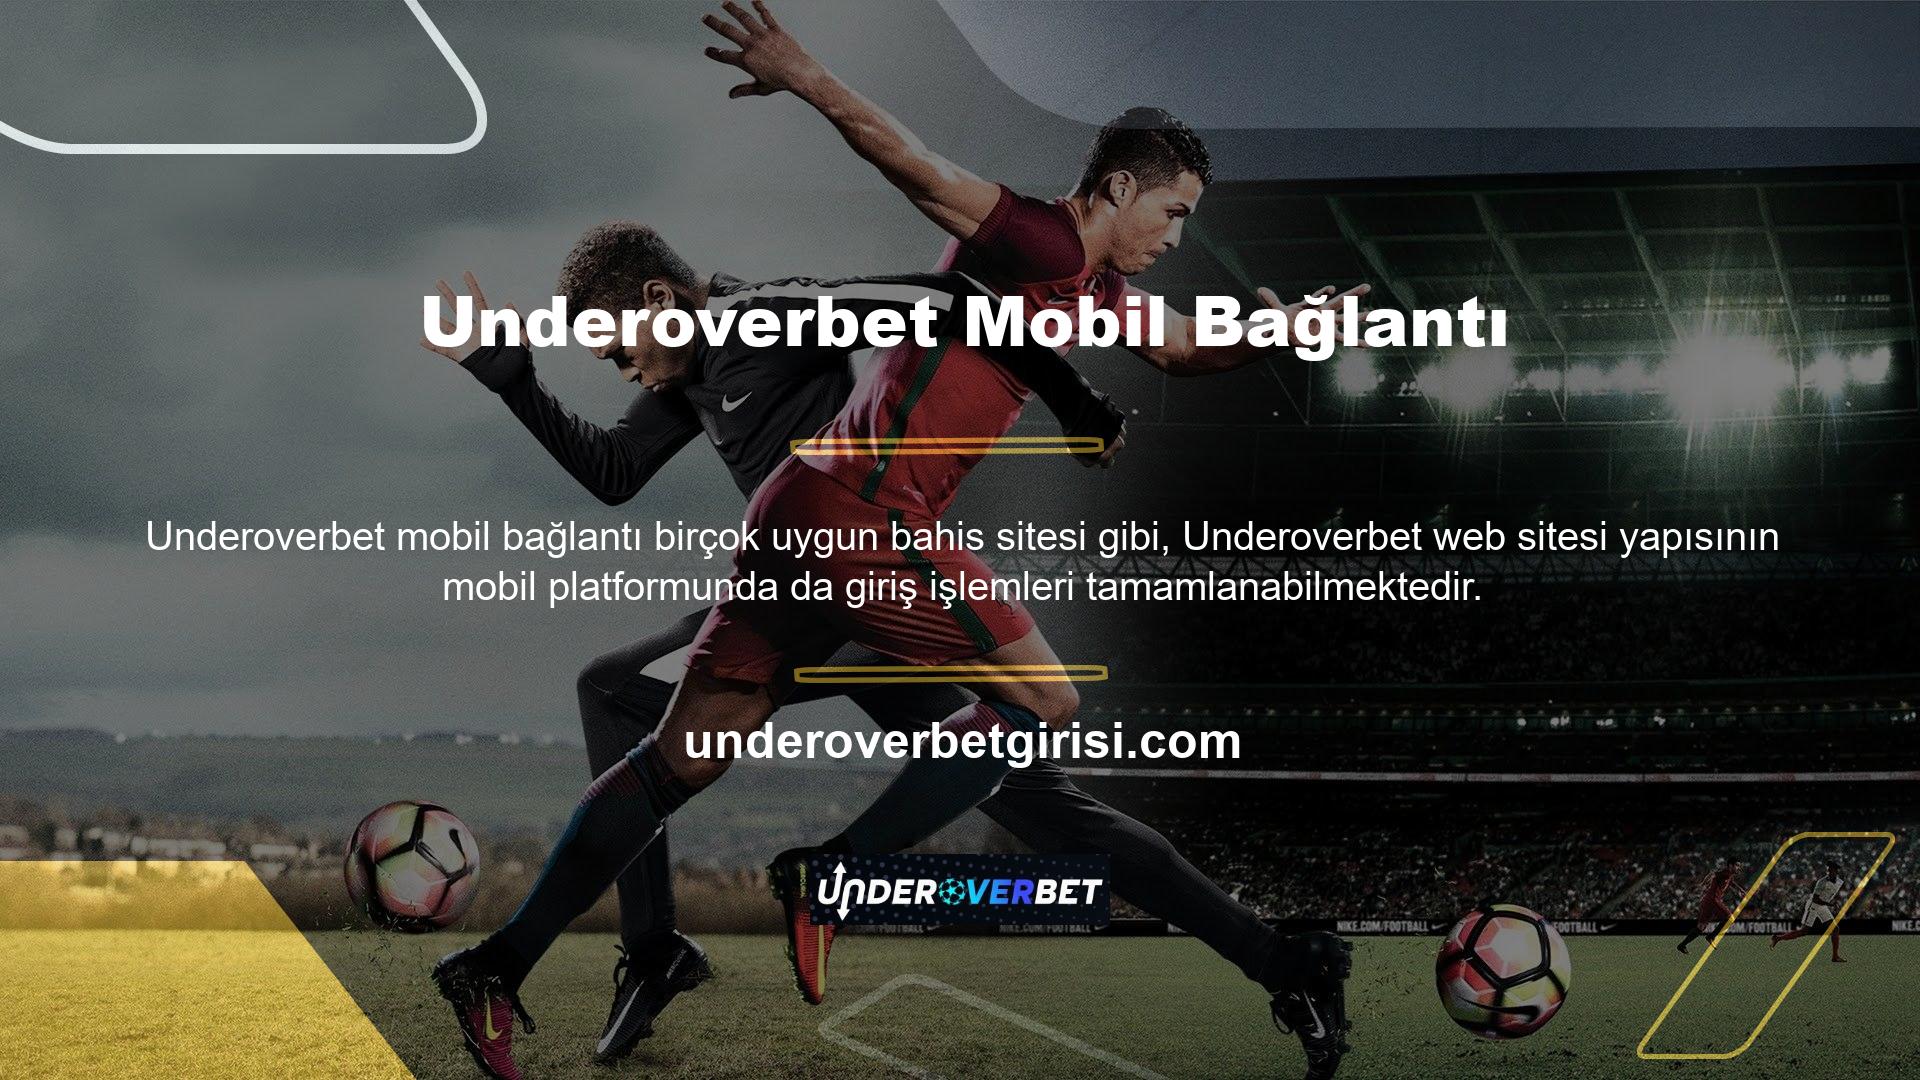 Underoverbet web sitesi dijital alandaki en güvenilir web sitelerinden biridir